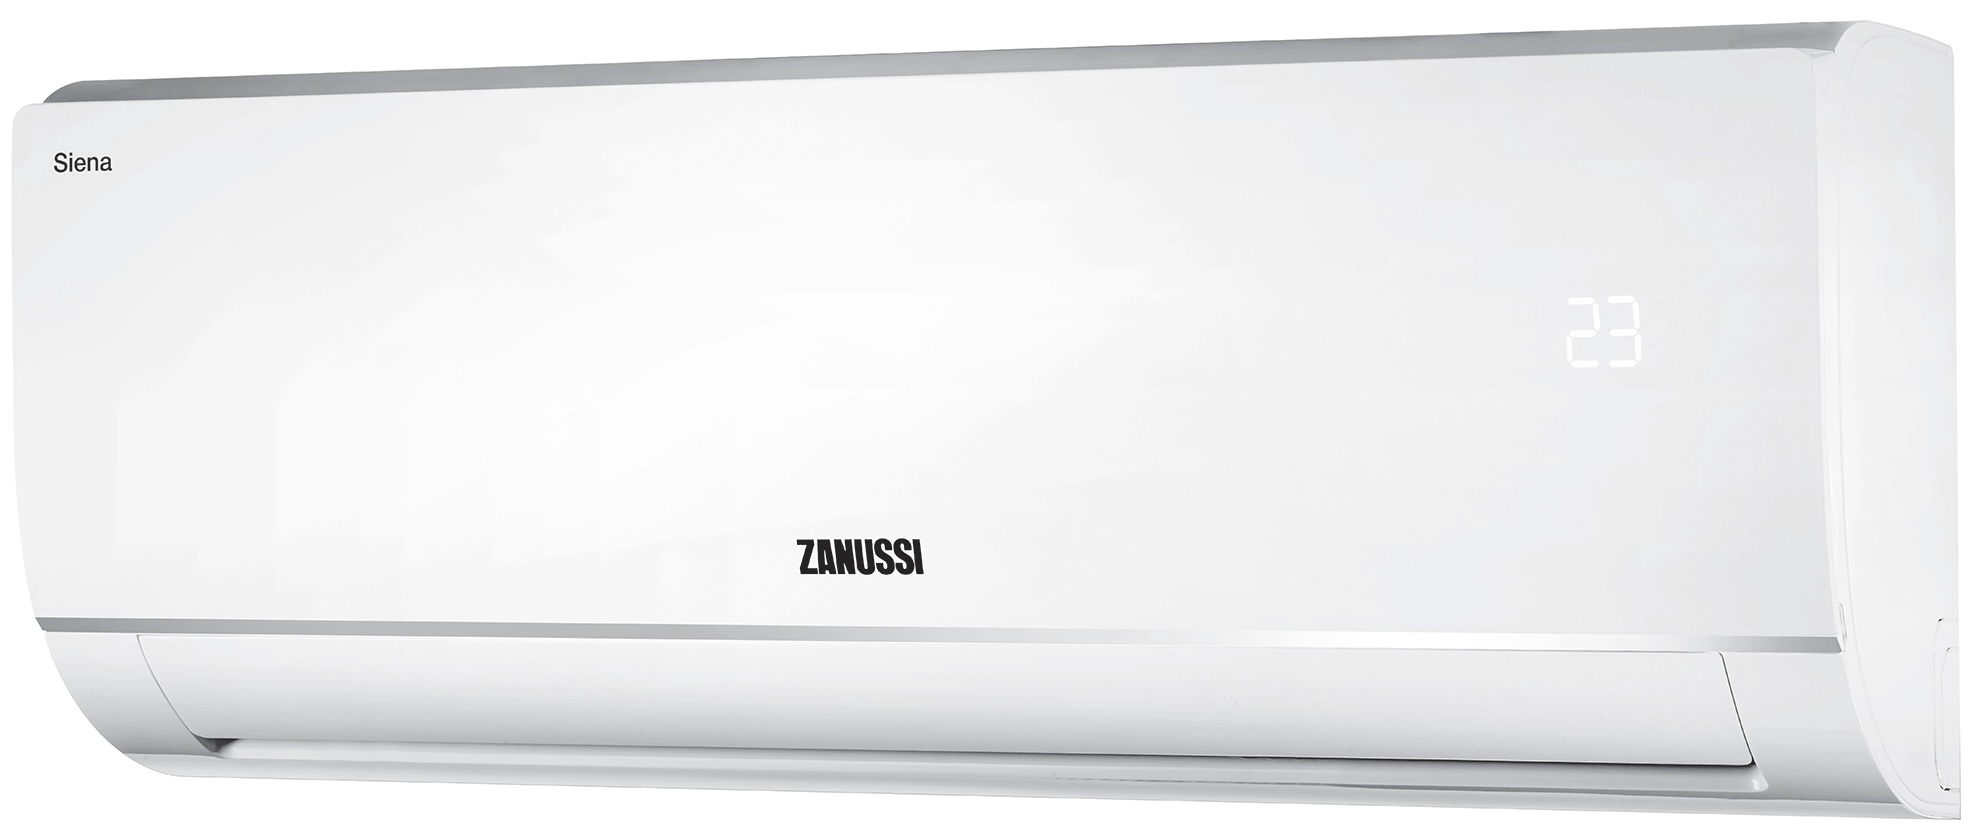 Кондиционер сплит-система Zanussi Siena ZACS-24 HS/A21/N1 отзывы - изображения 5